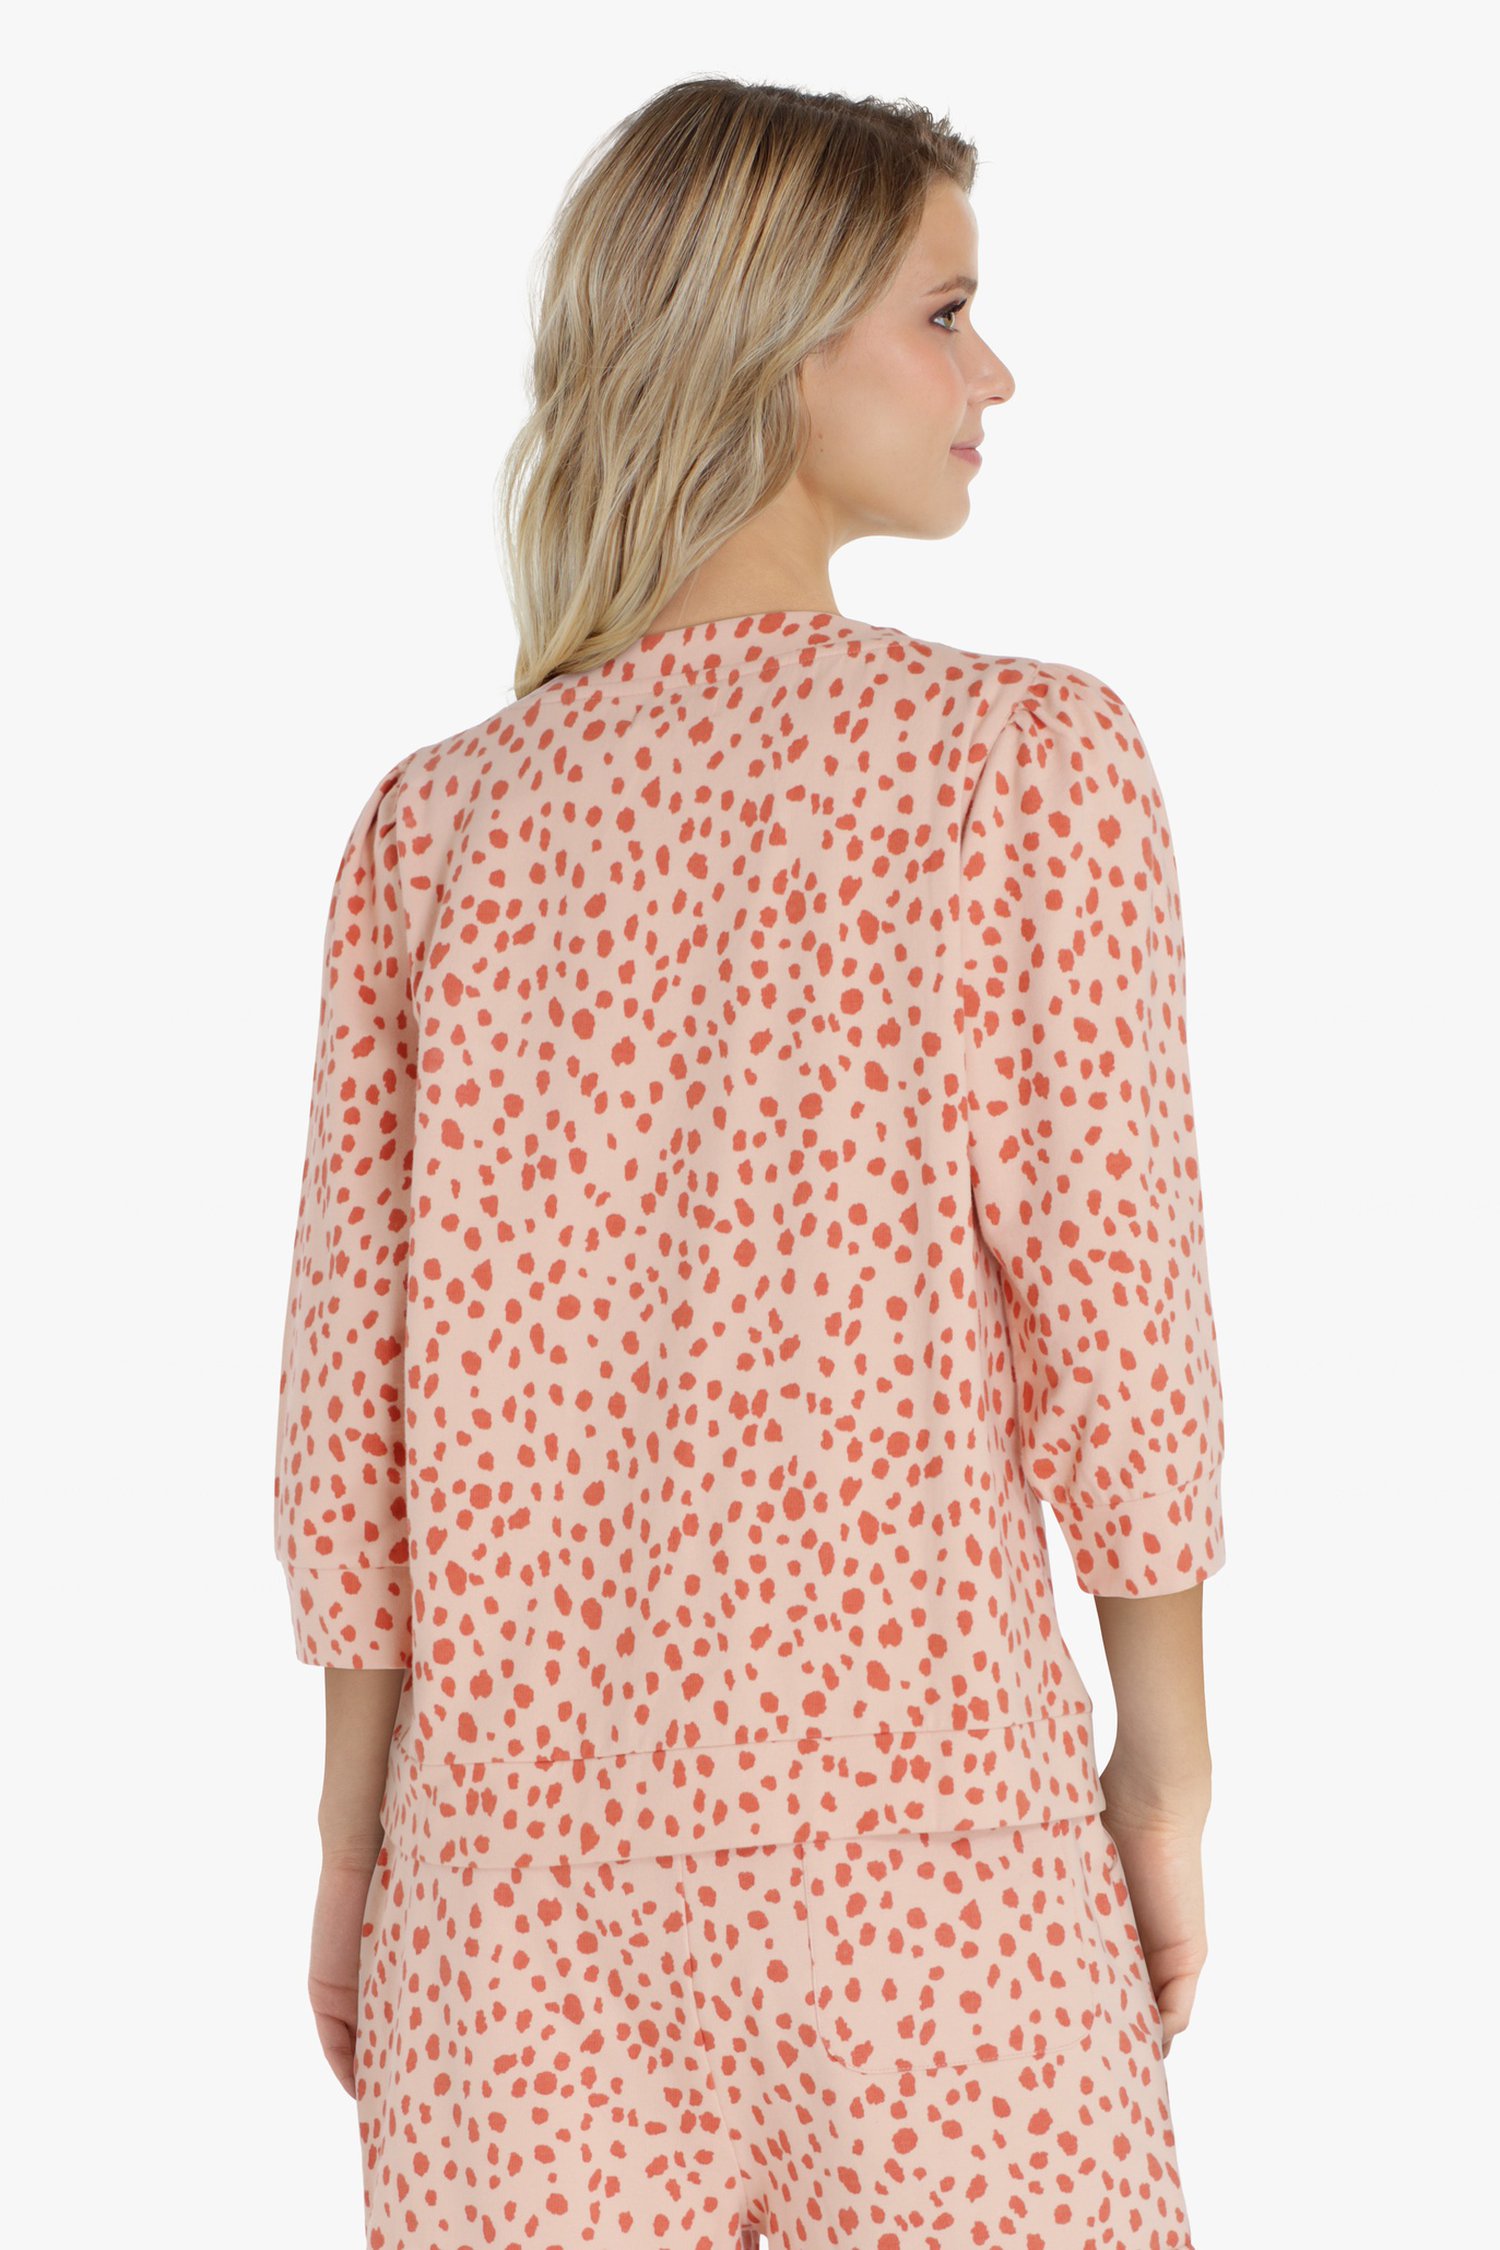 Roze trui met dierenprint van Liberty Island homewear voor Dames